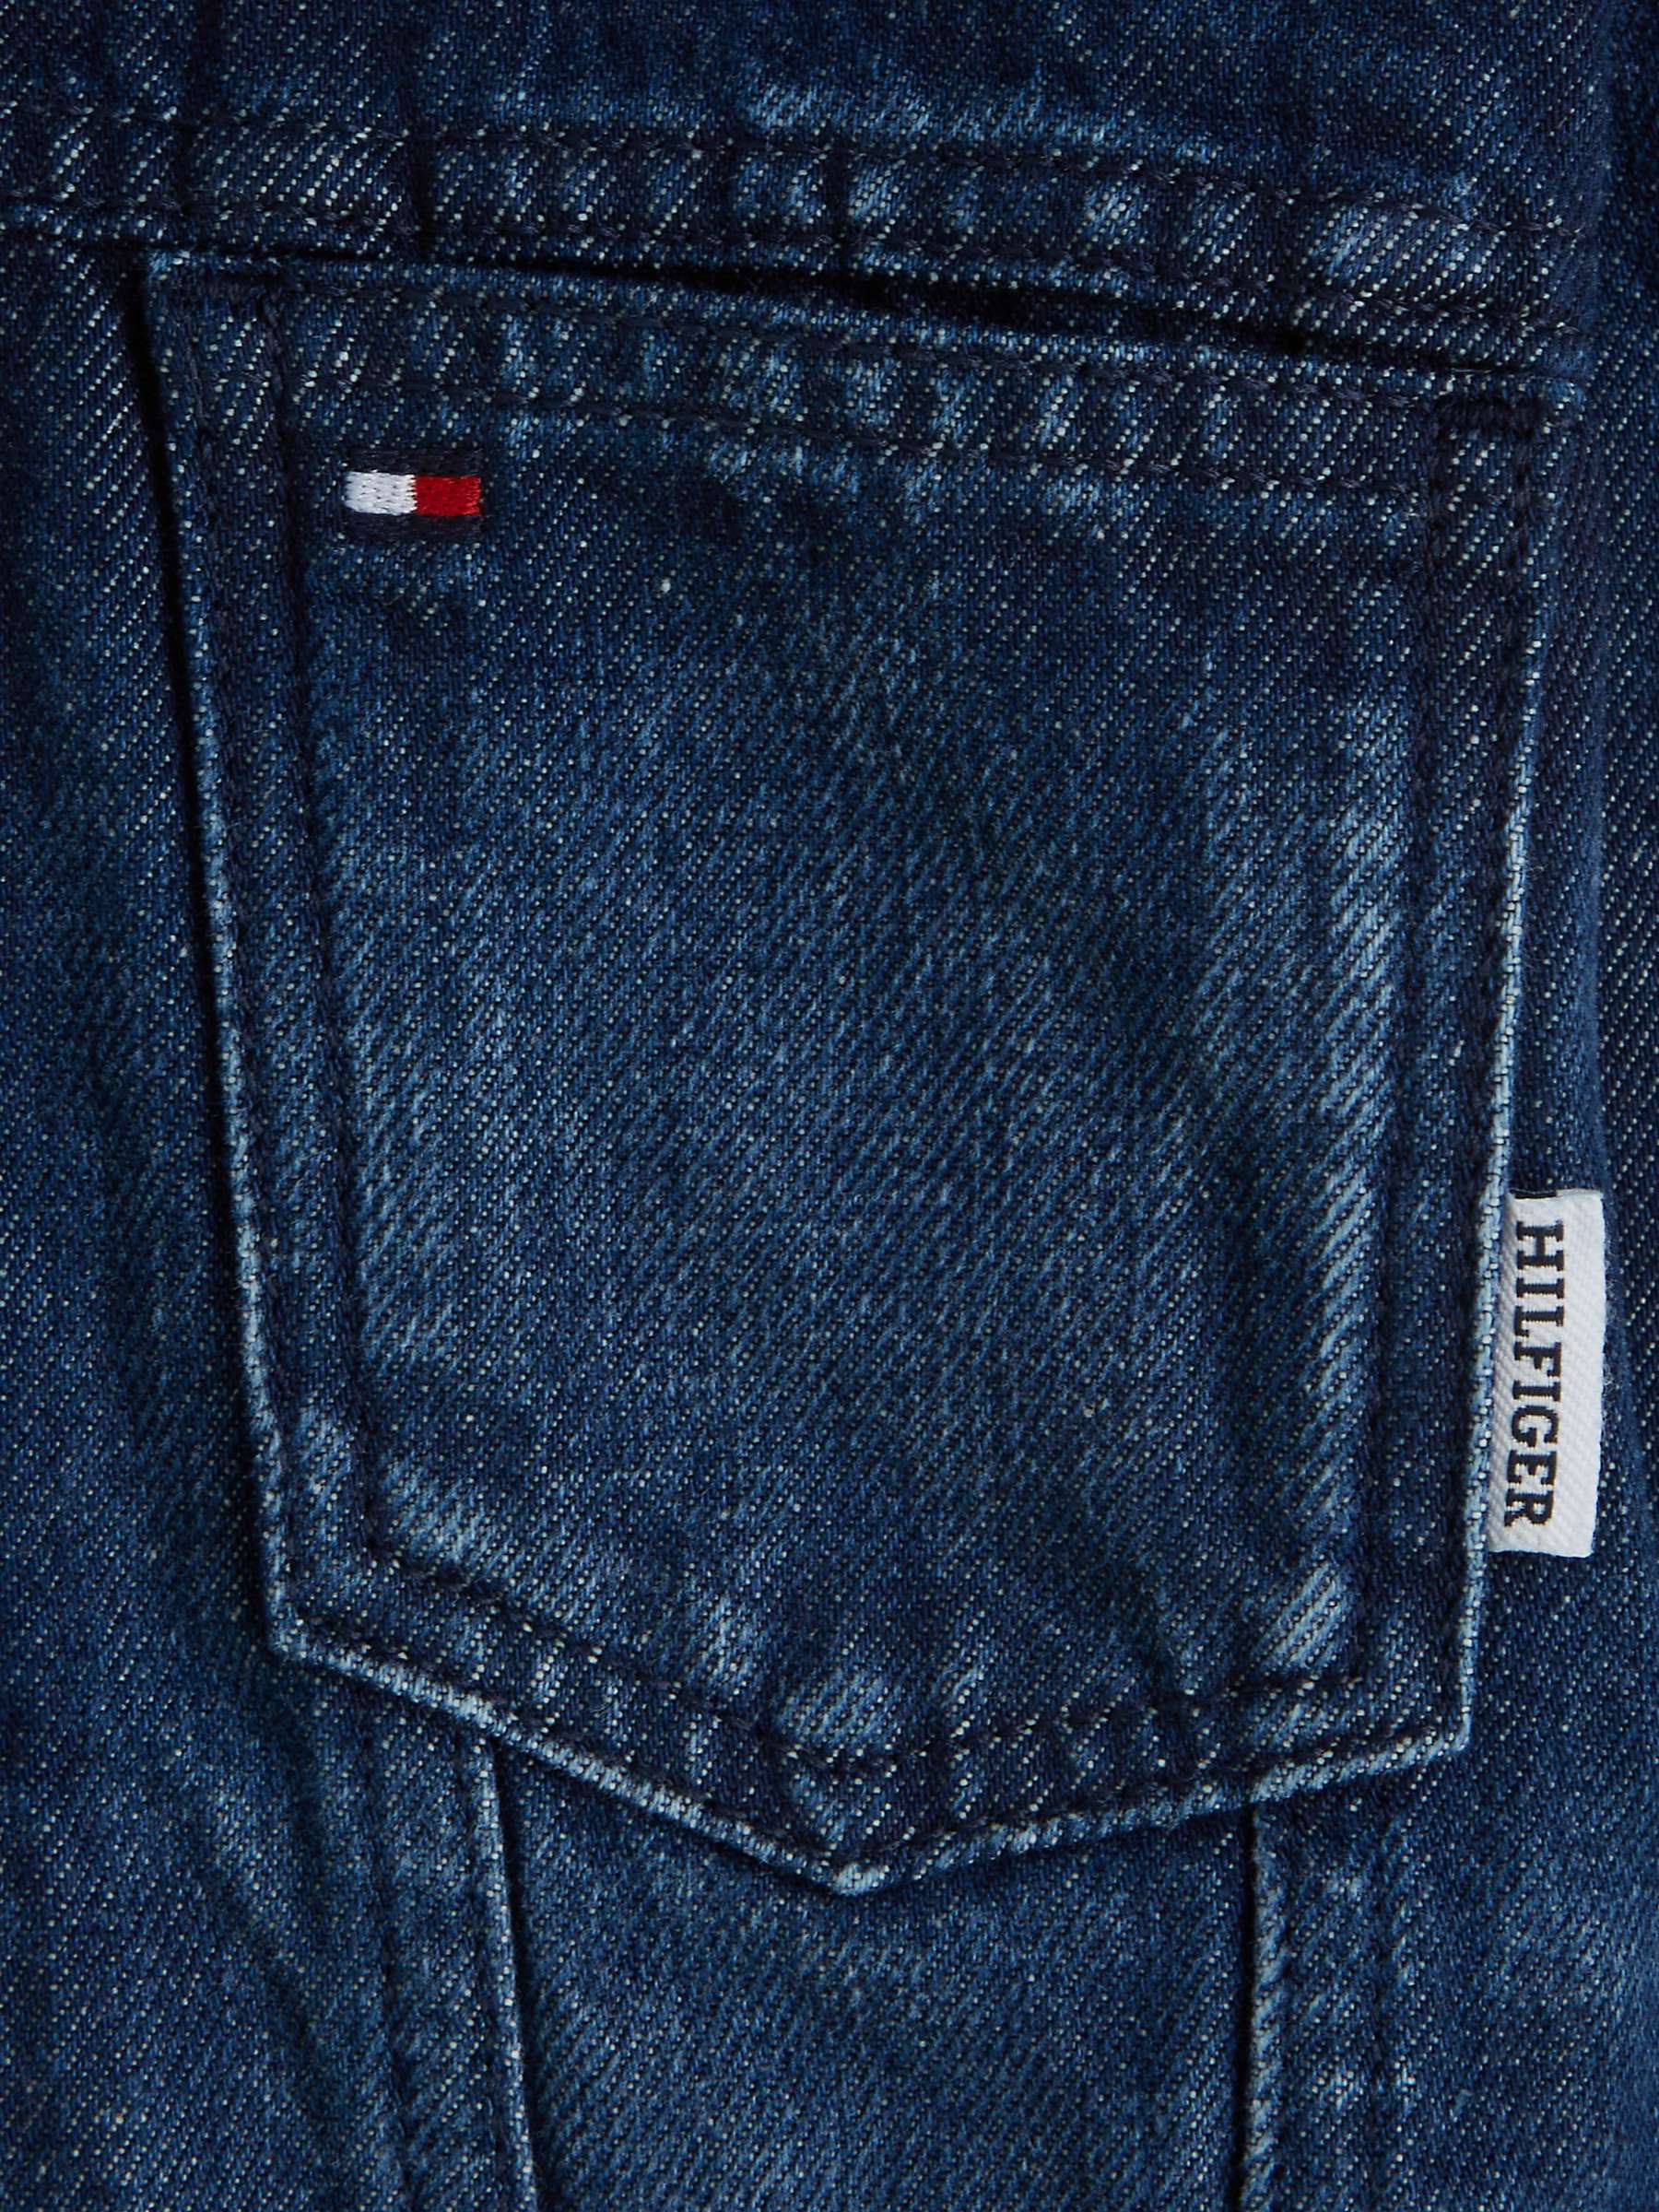 Buy Tommy Hilfiger Kids' Oversized Denim Jacket, Rivendel Dark Online at johnlewis.com